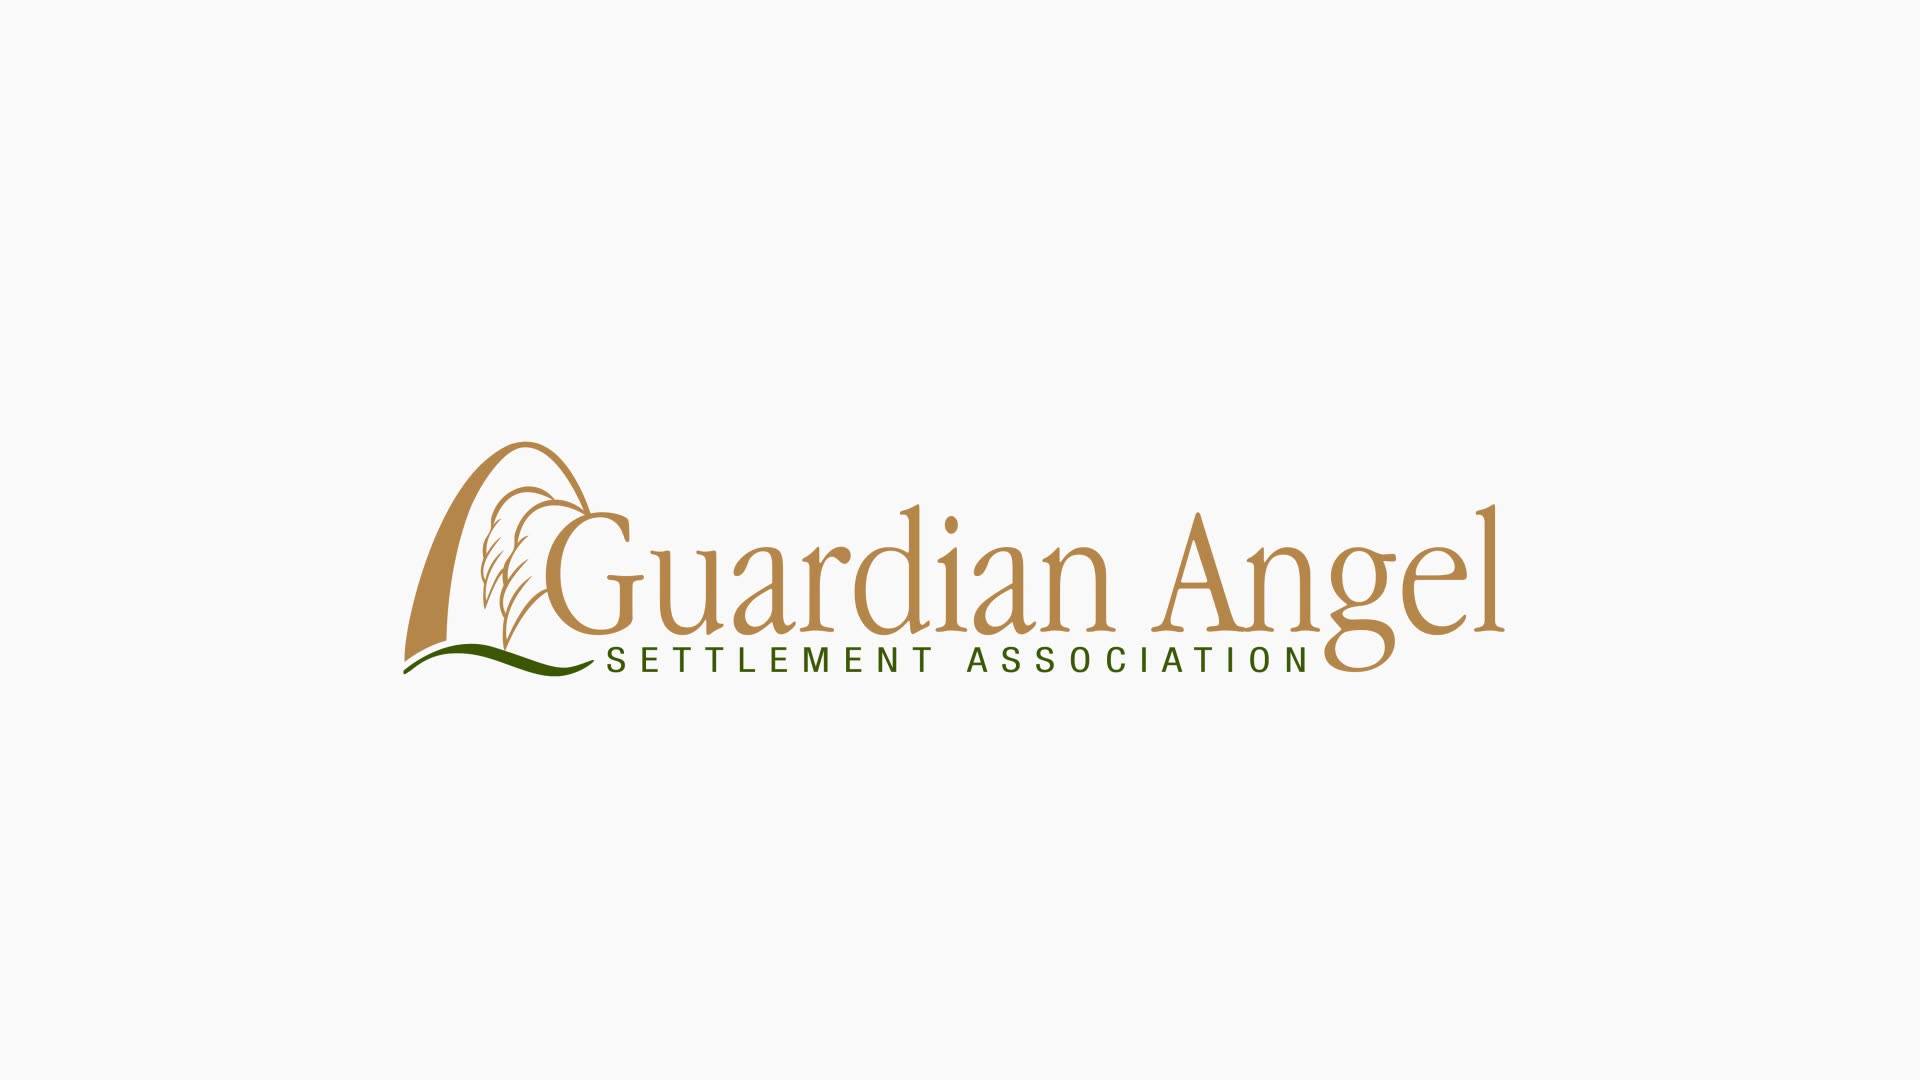 Guardian Angel Settlement Association